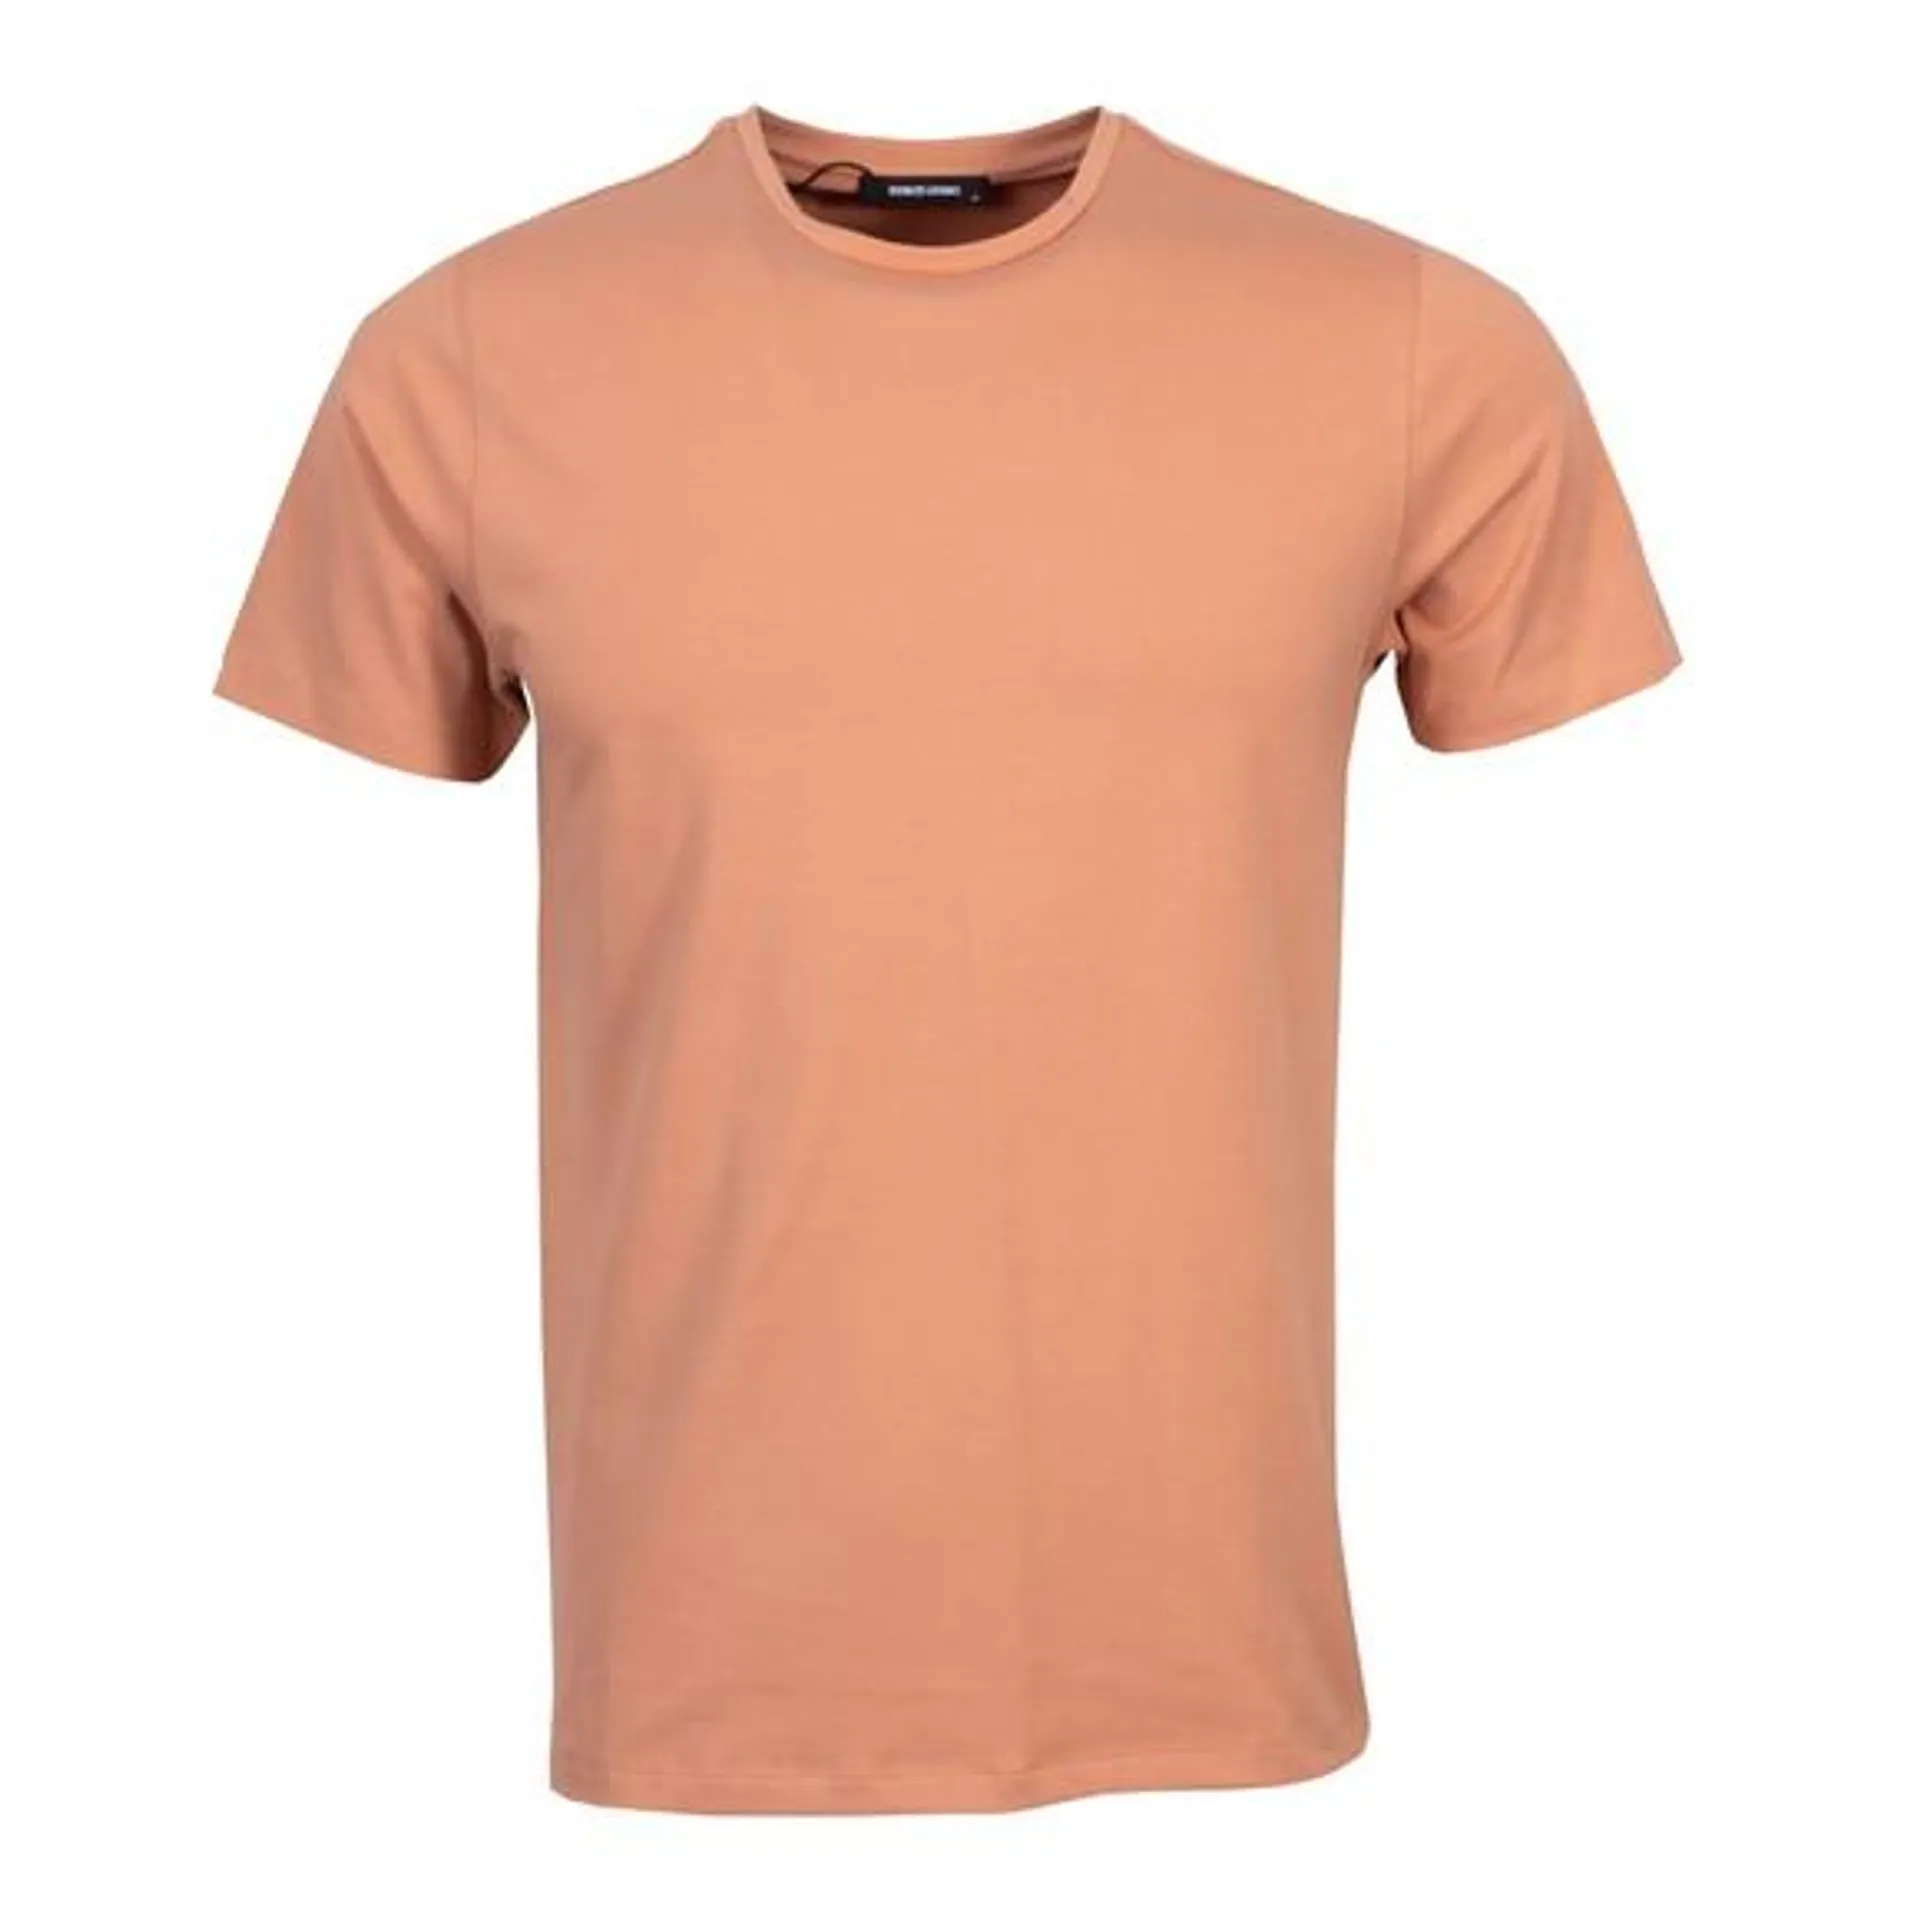 Mens Orange Plain T-Shirt